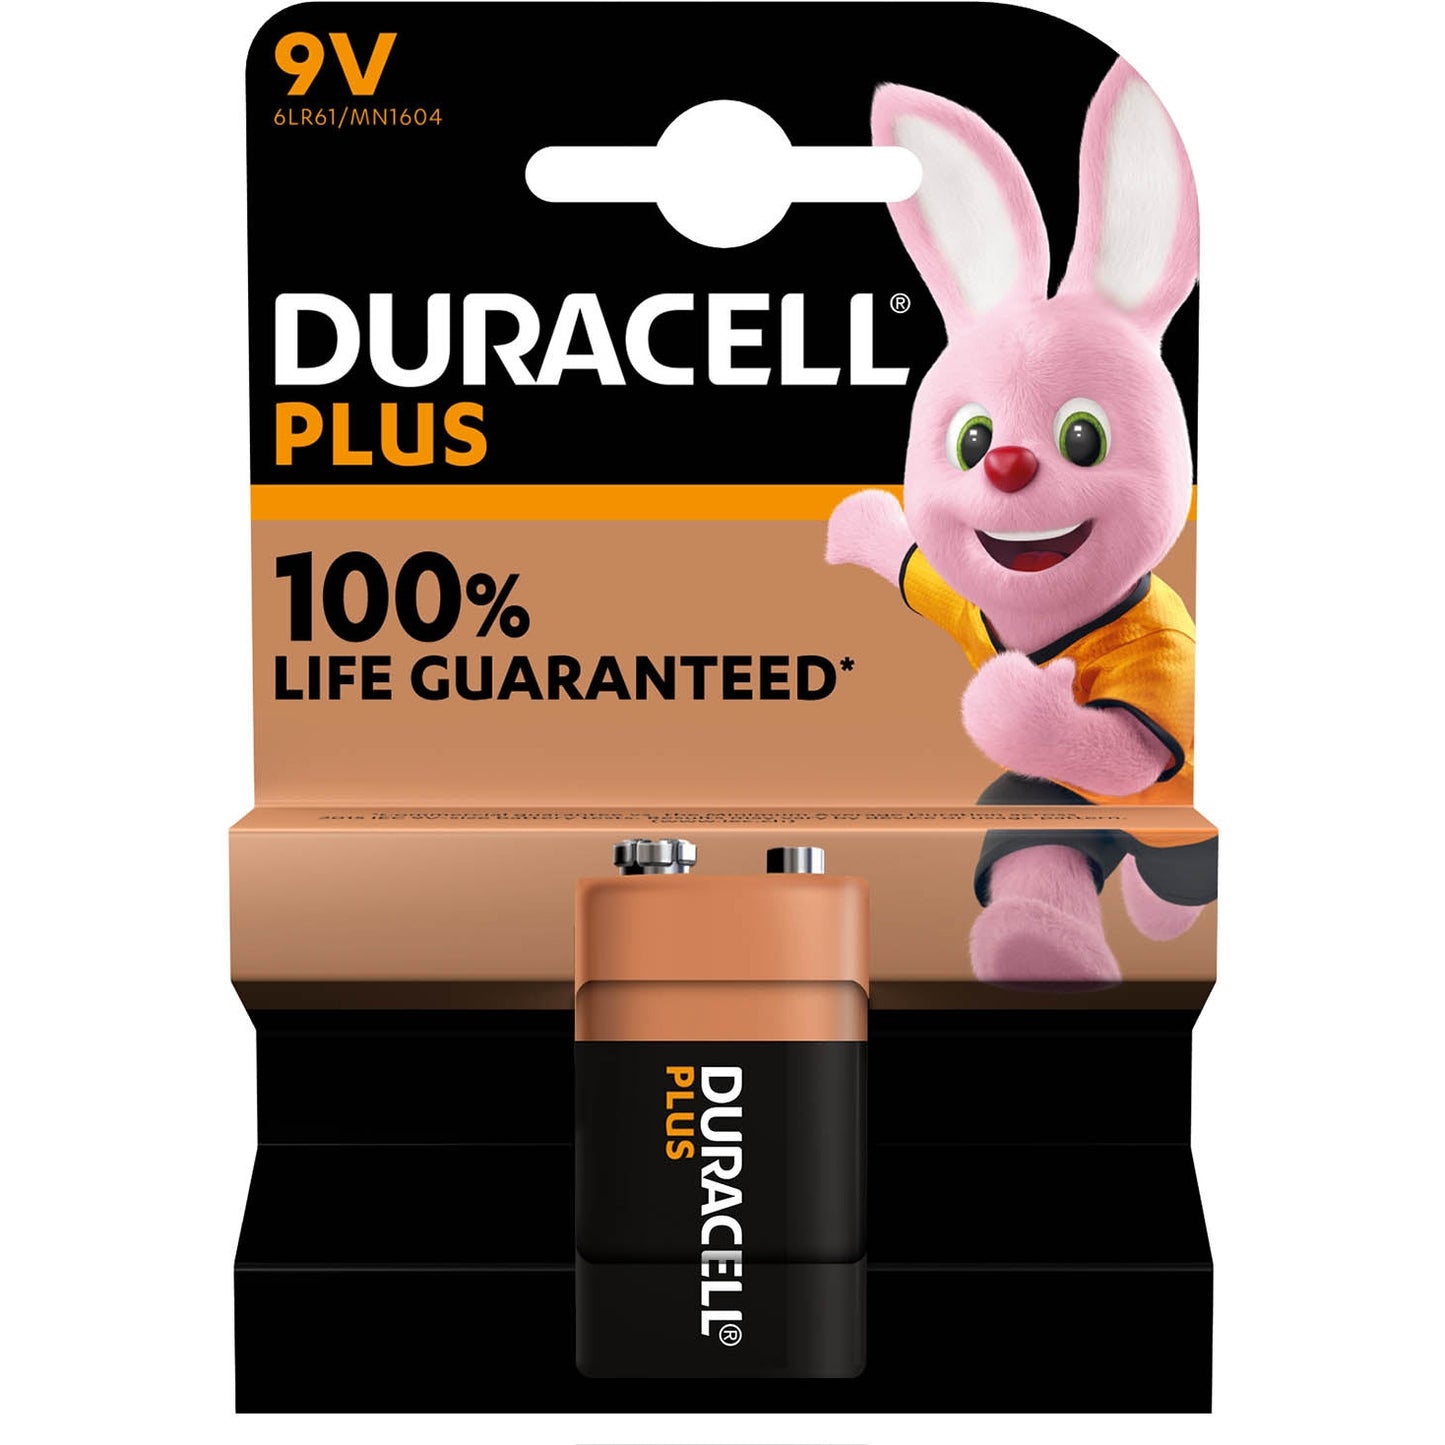 Duracell Plus Power 9V Battery - Single